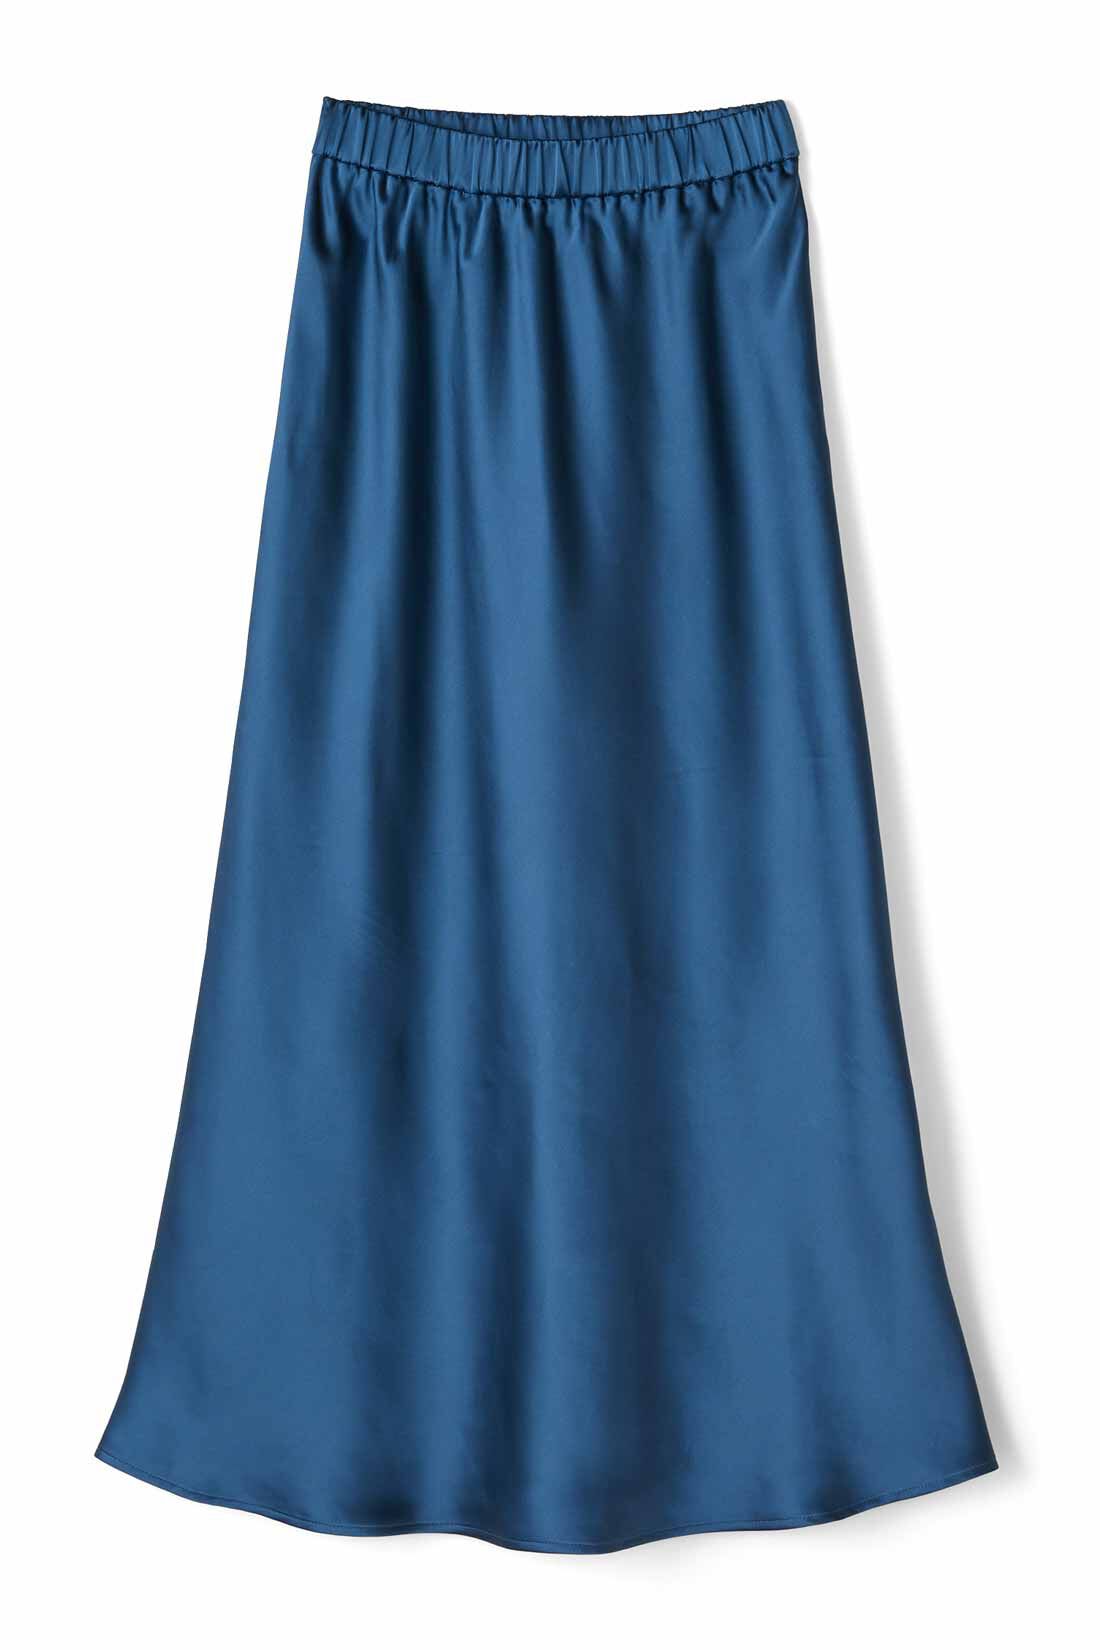 IEDIT[イディット]　サテンの光沢が美しいセミサーキュラースカート〈ディープブルー〉|〈ディープブルー〉